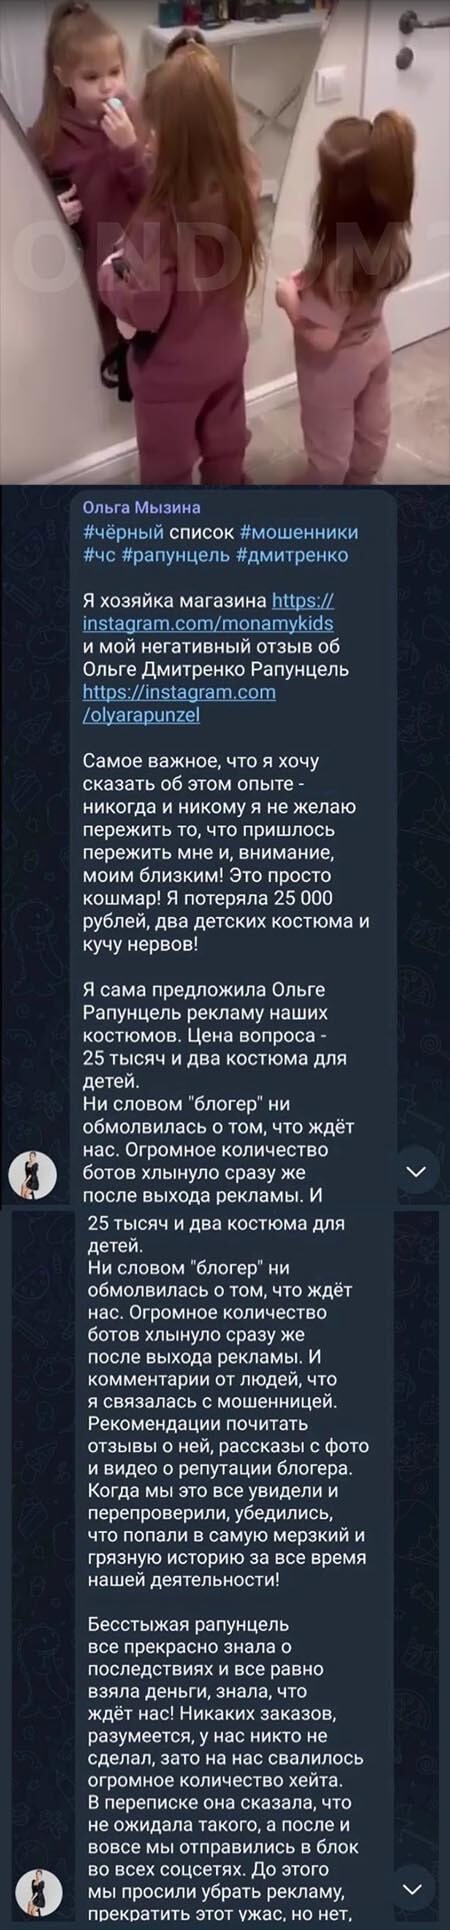 Пост Ольги Мызиной вконтакте